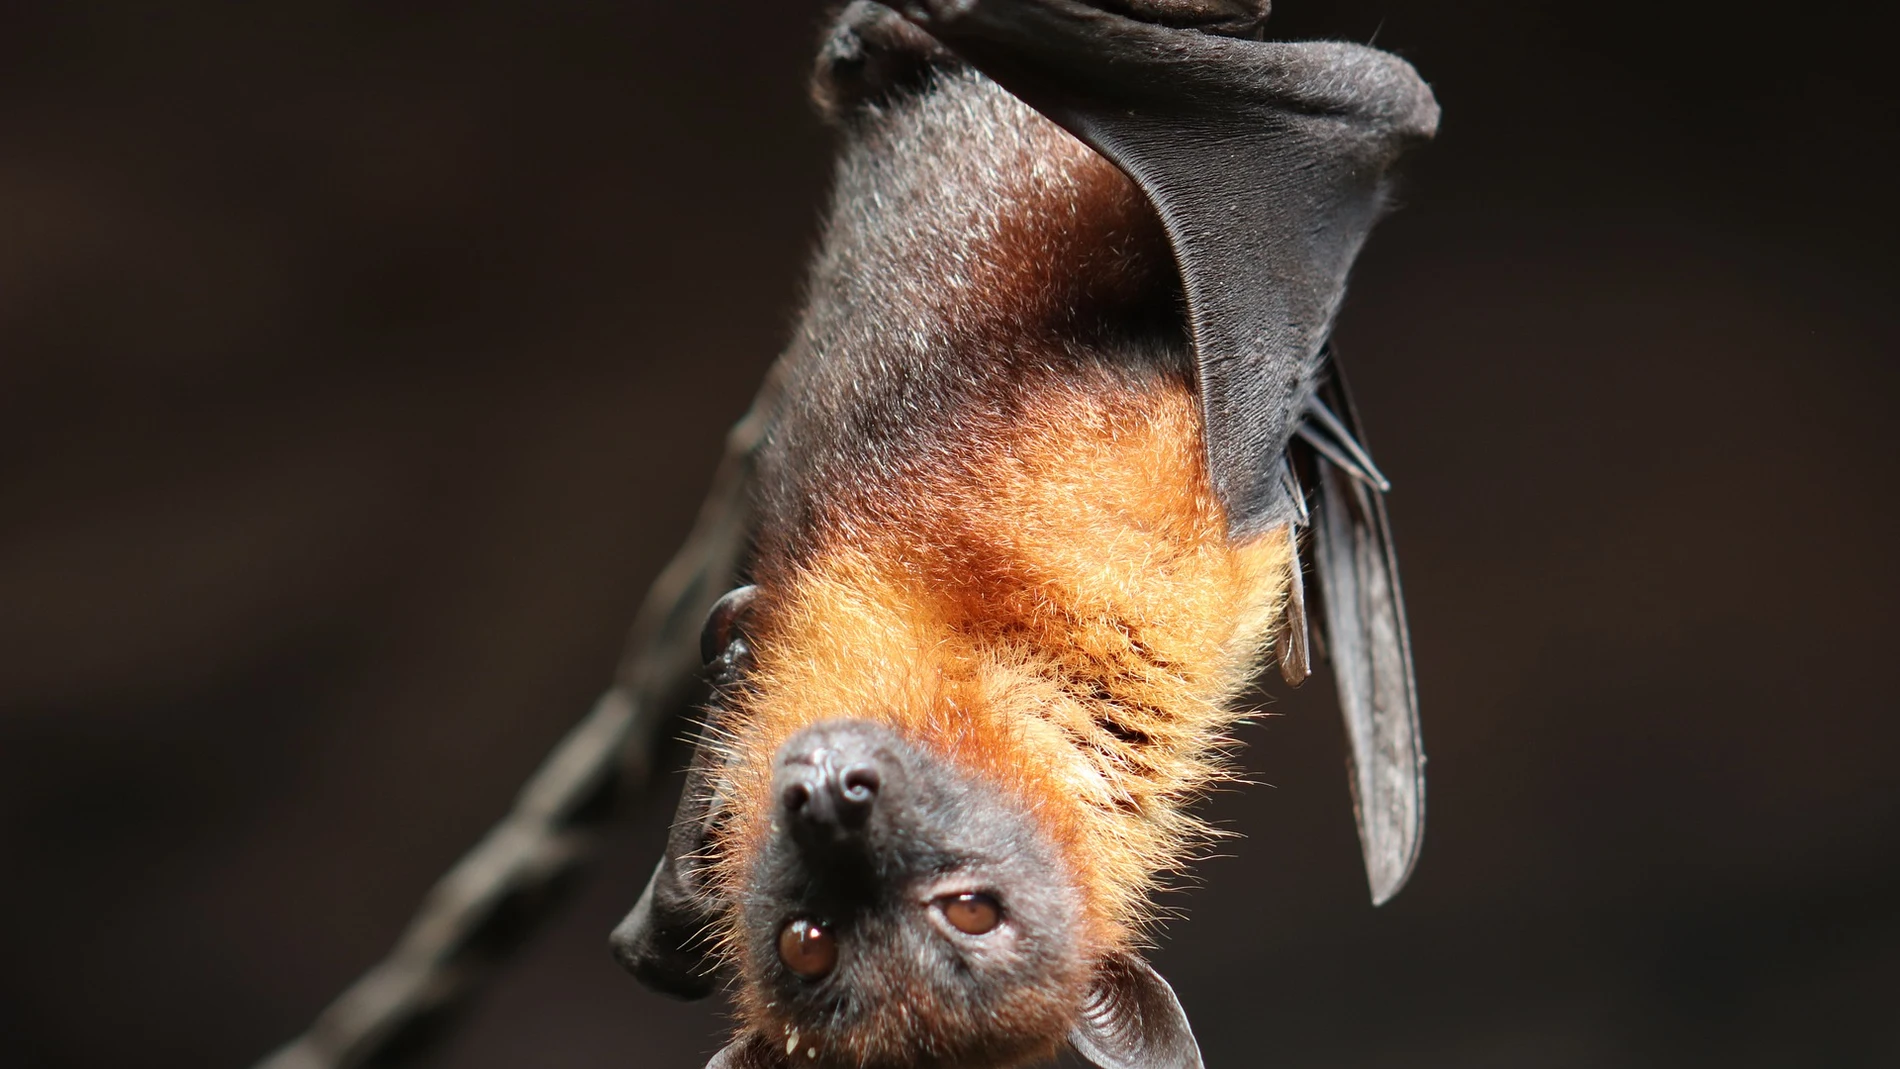 Los murciélagos tienen mala fama respecto al salto de nuevos virus al ser humano, pero lo cierto es que cualquier animal es susceptible de transferirnos sus enfermedades.